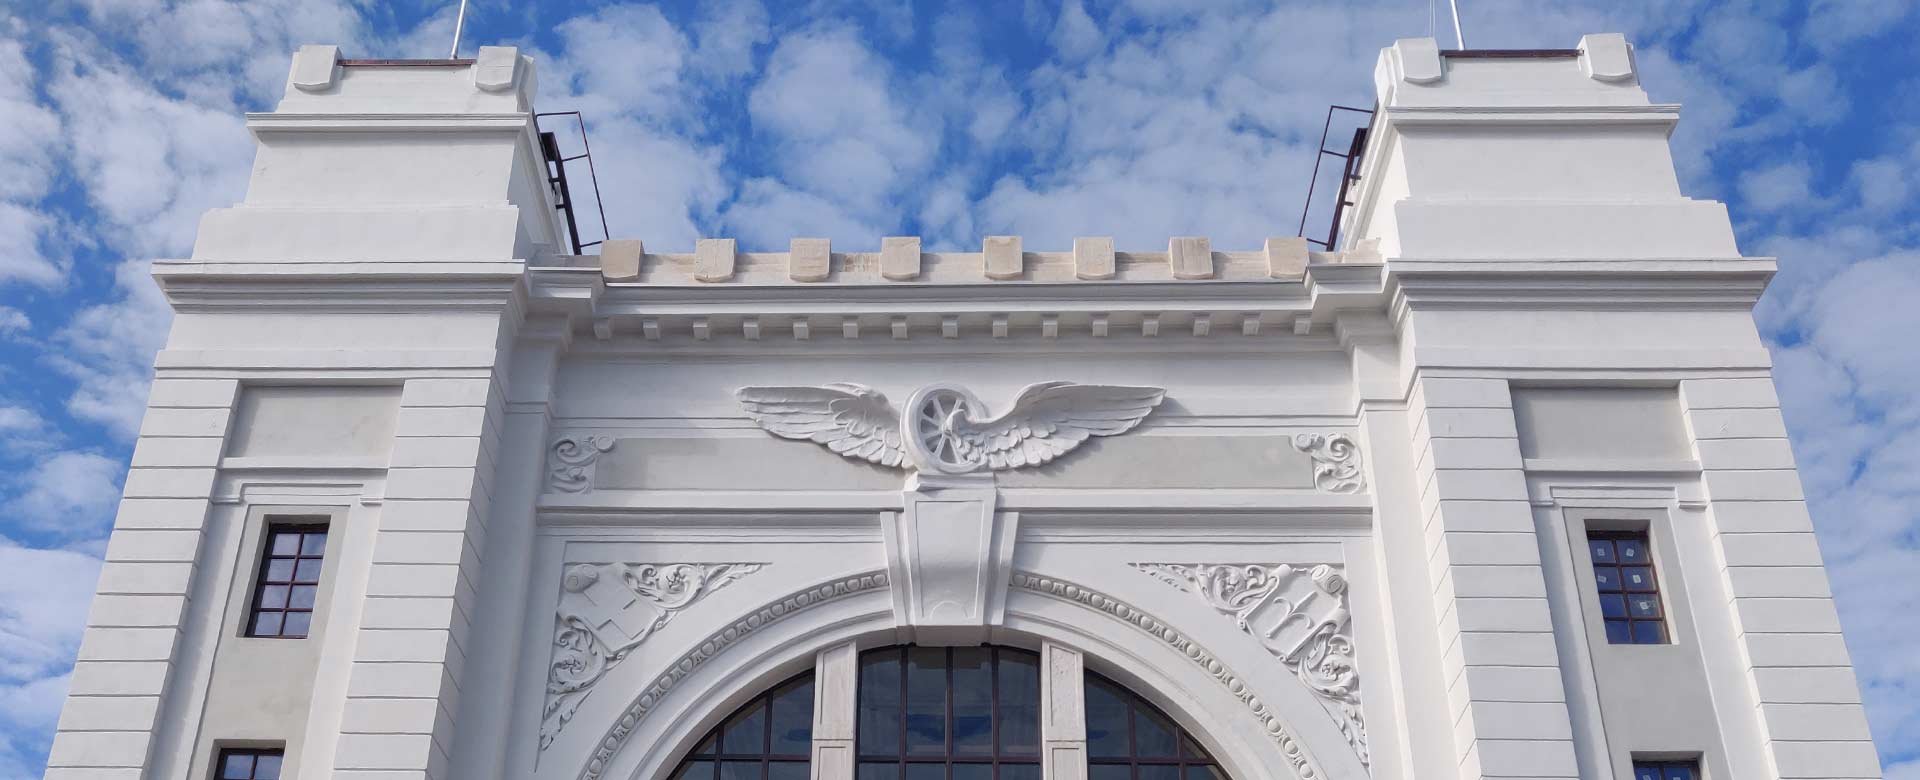 Immagine della facciata restaurata della stazione-museo di Campo Marzio, a Trieste